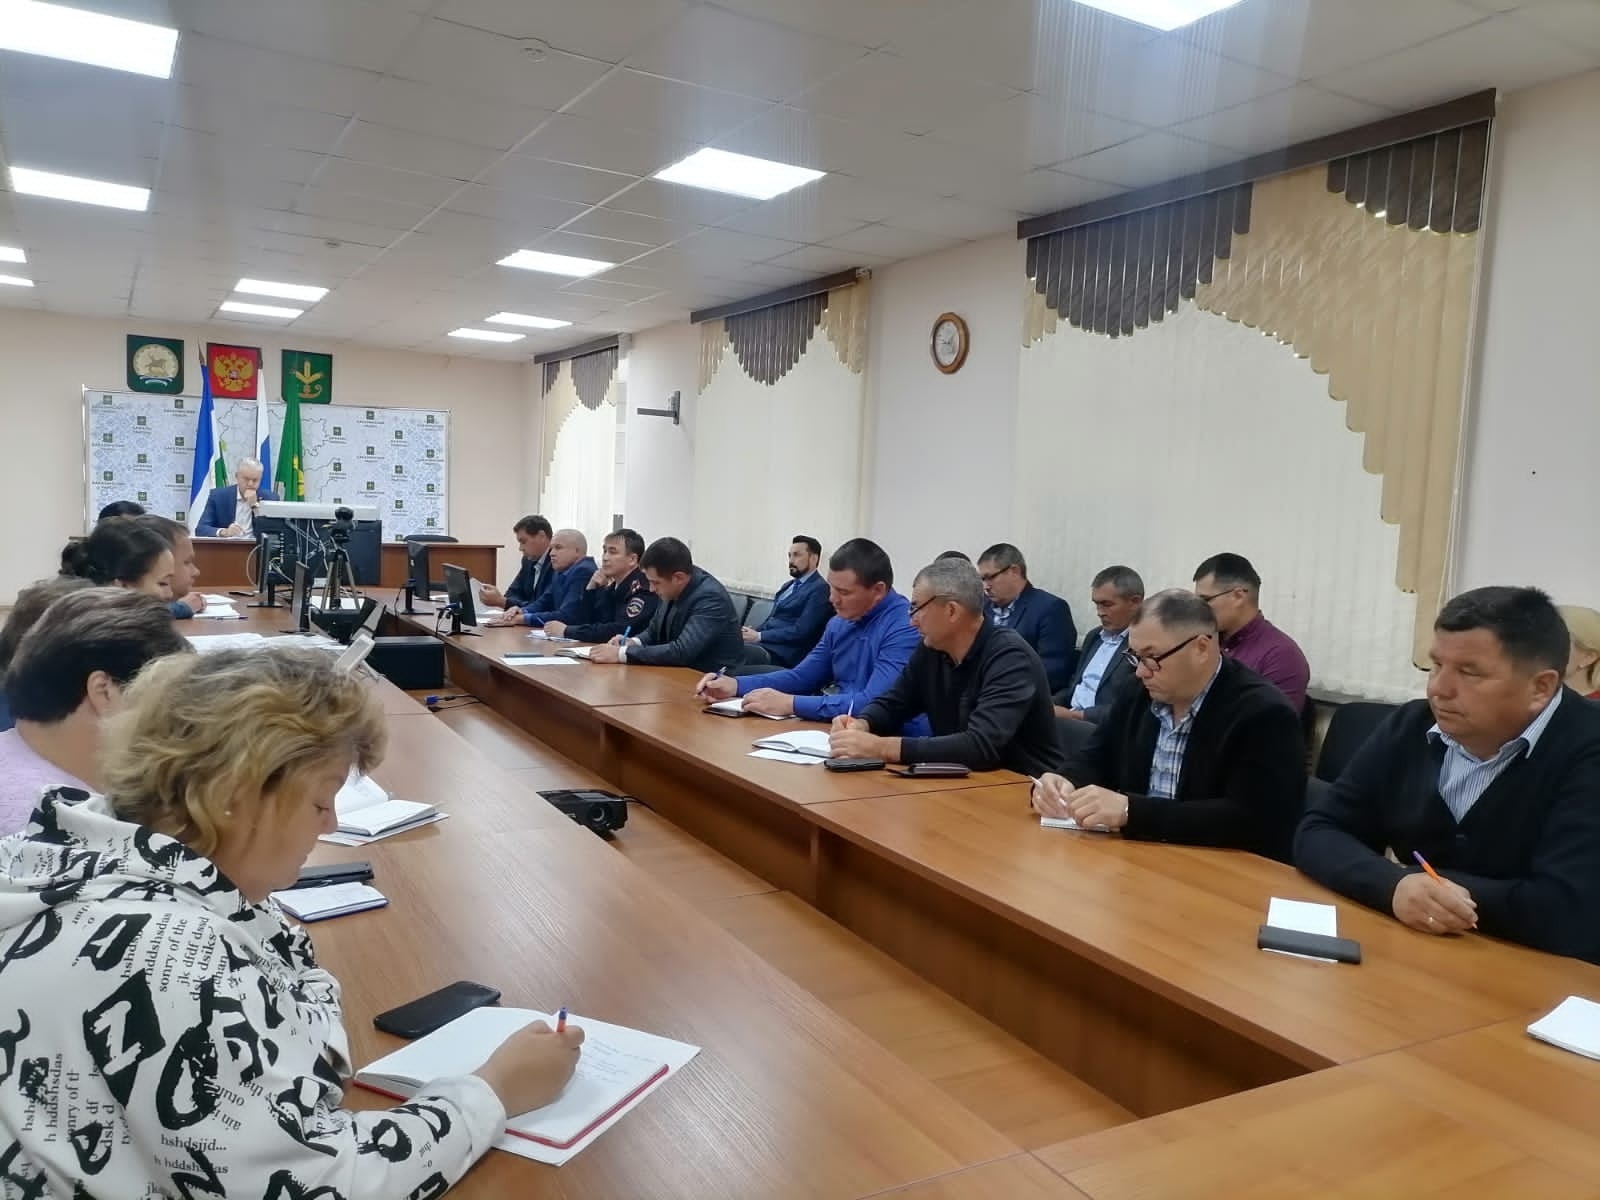 В администрации района состоялось рабочее совещание с участием работодателей и глав сельских поселений.